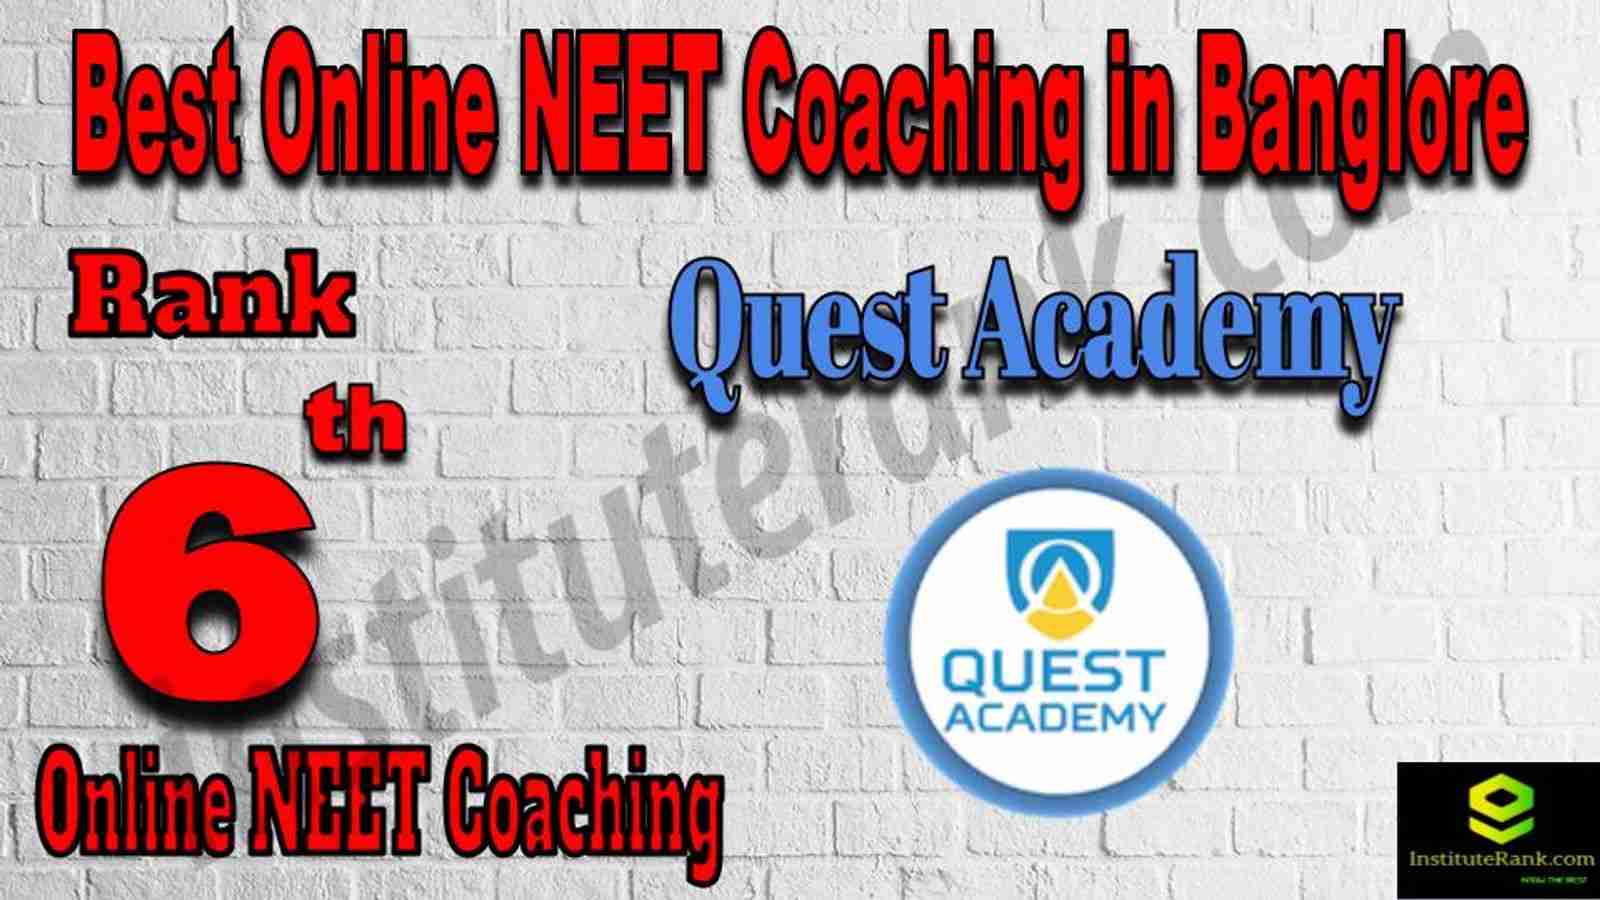 Rank 6 Best Online NEET Coaching in Banglore